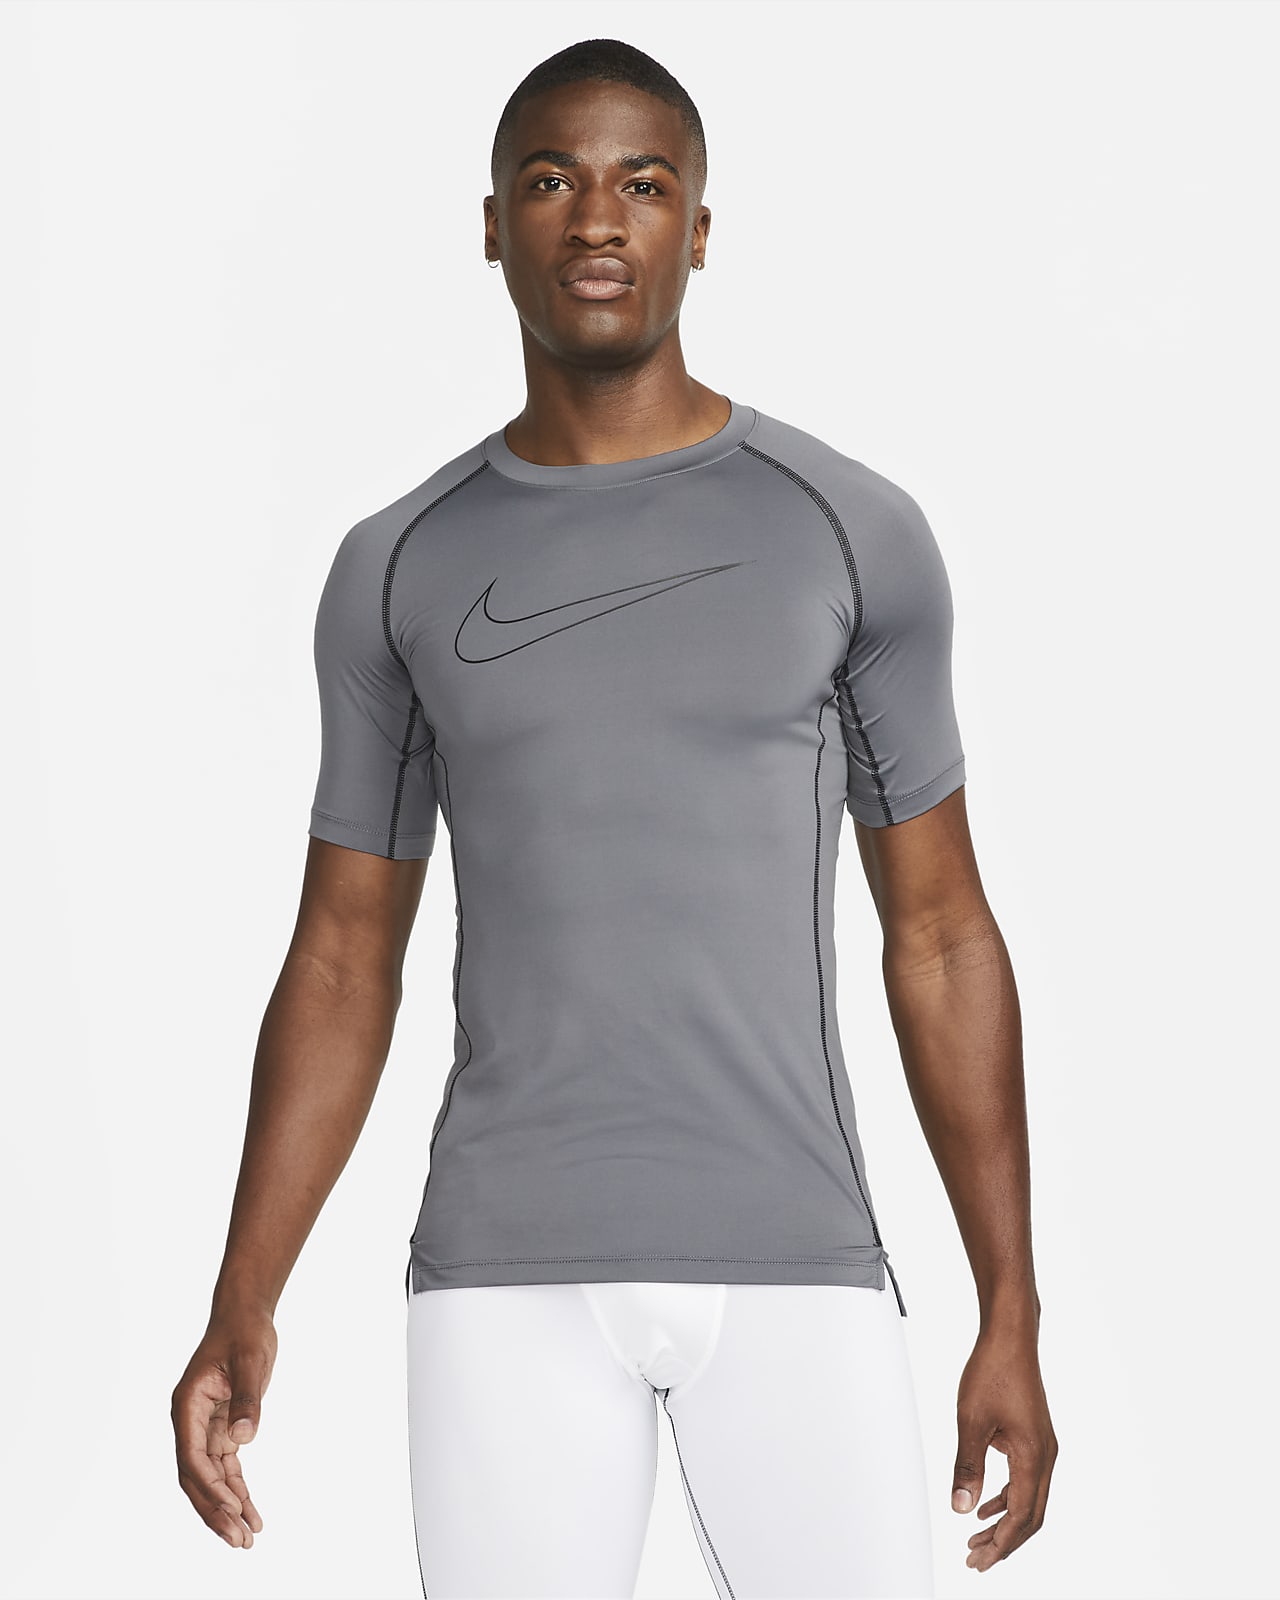 Nike Pro Dri-FIT Men's Tight Short-Sleeve Top.